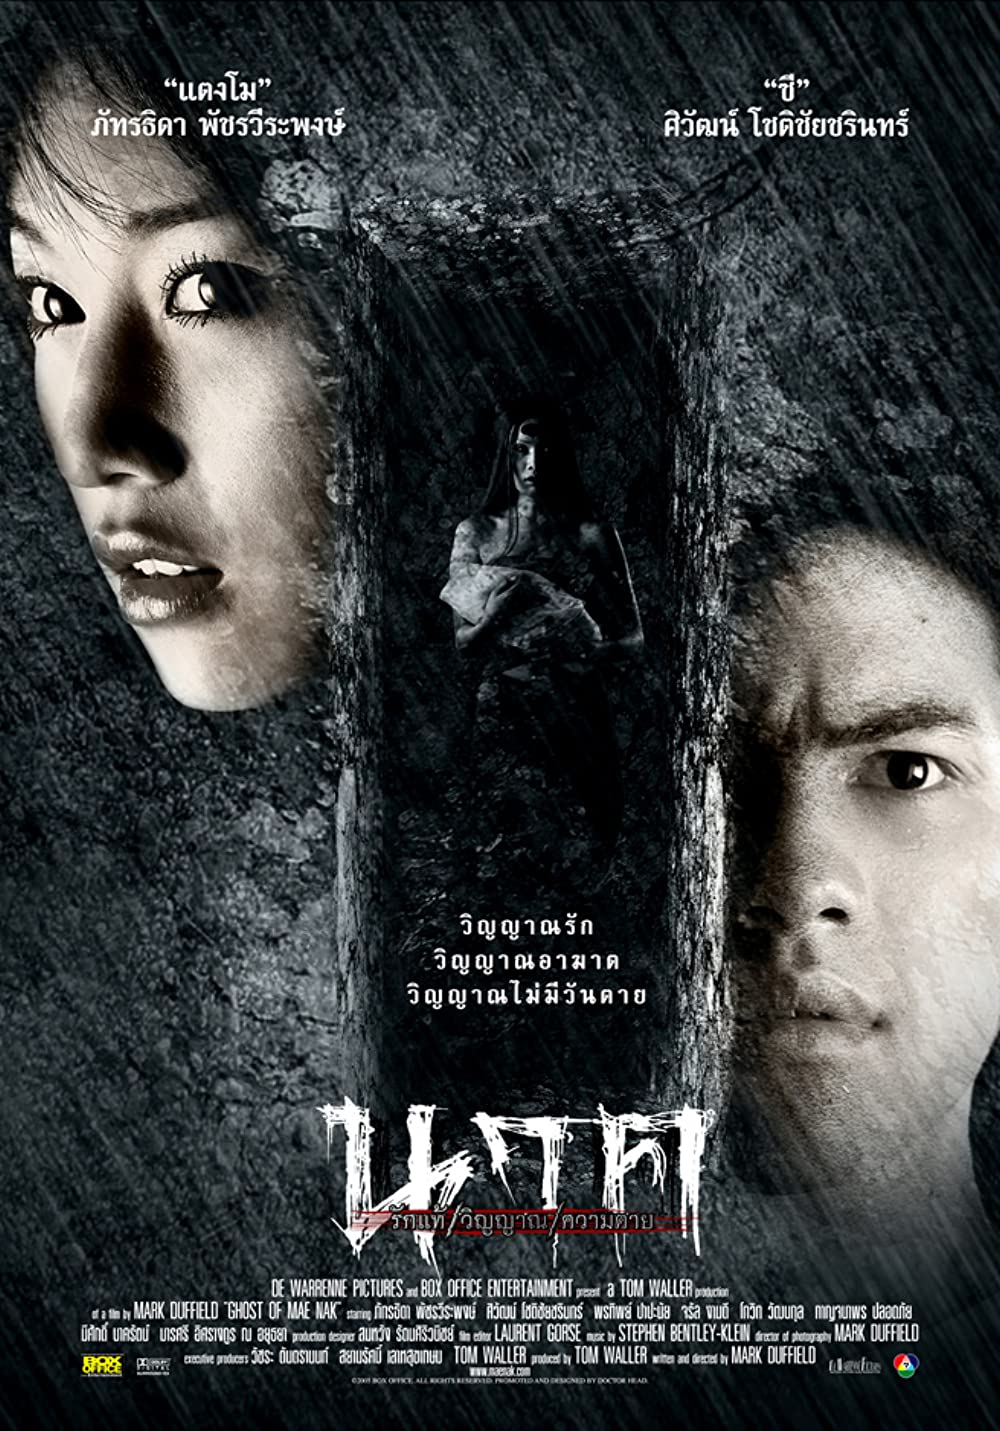 ดูหนังออนไลน์ฟรี Ghost of Mae Nak (2005) นาค รักแท้ วิญญาณ ความตาย หนังเต็มเรื่อง หนังมาสเตอร์ ดูหนังHD ดูหนังออนไลน์ ดูหนังใหม่